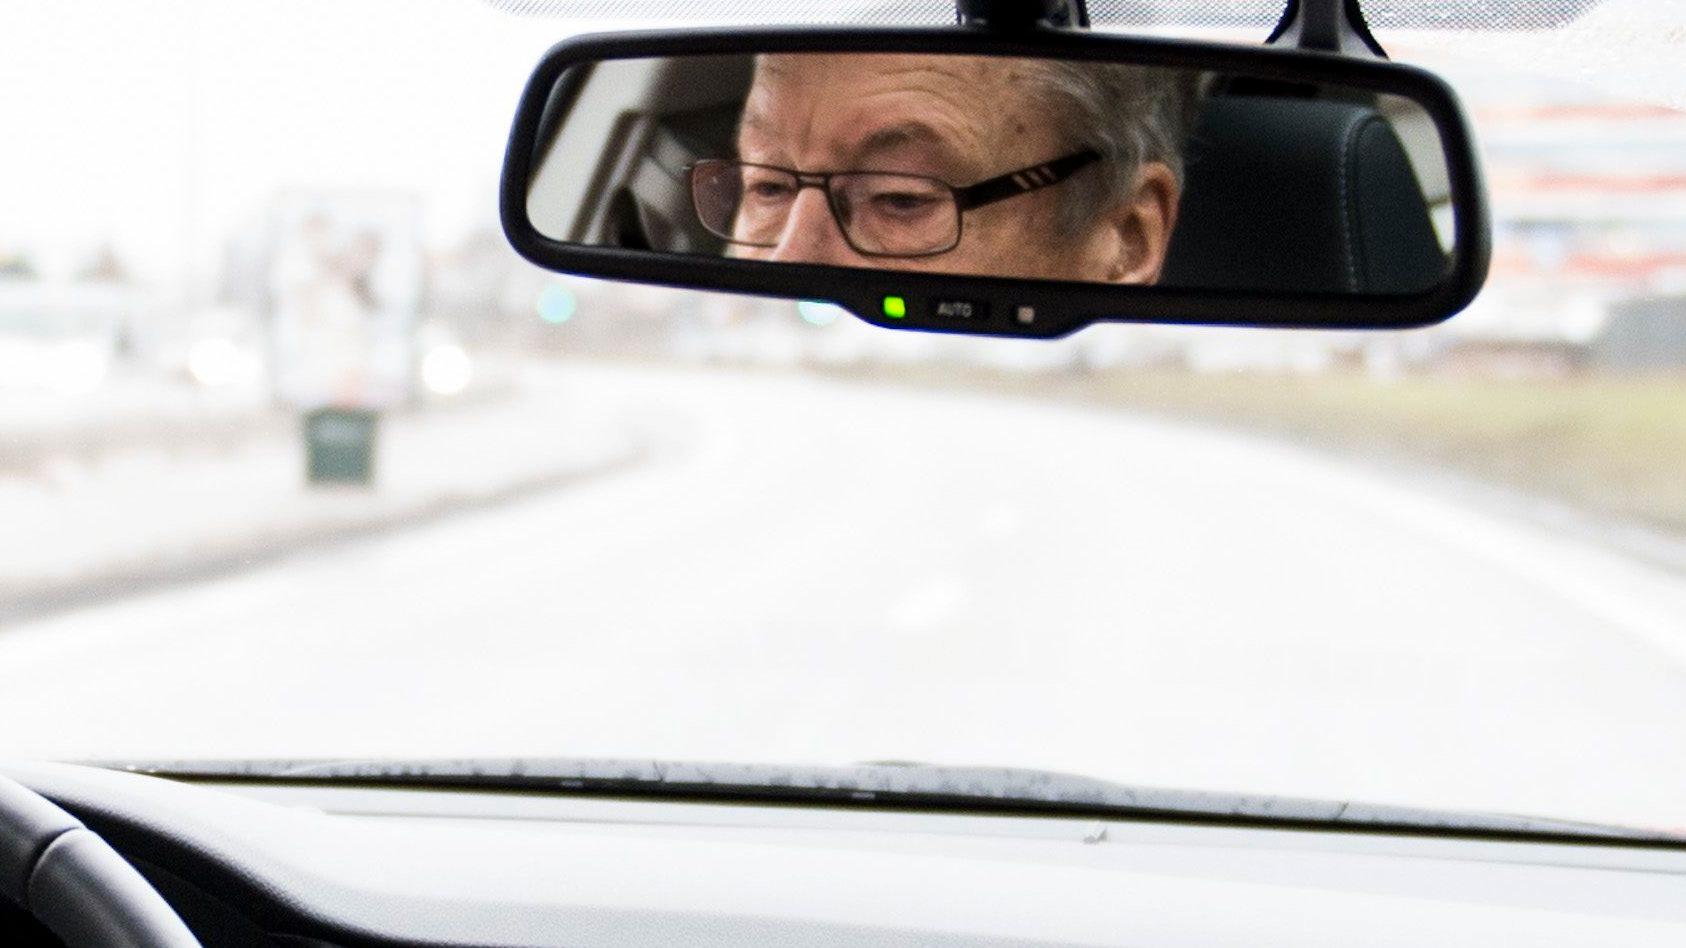 Bilförare bör kolla sin syn regelbundet, anser Bilprovningen och optiker. Arkivbild.